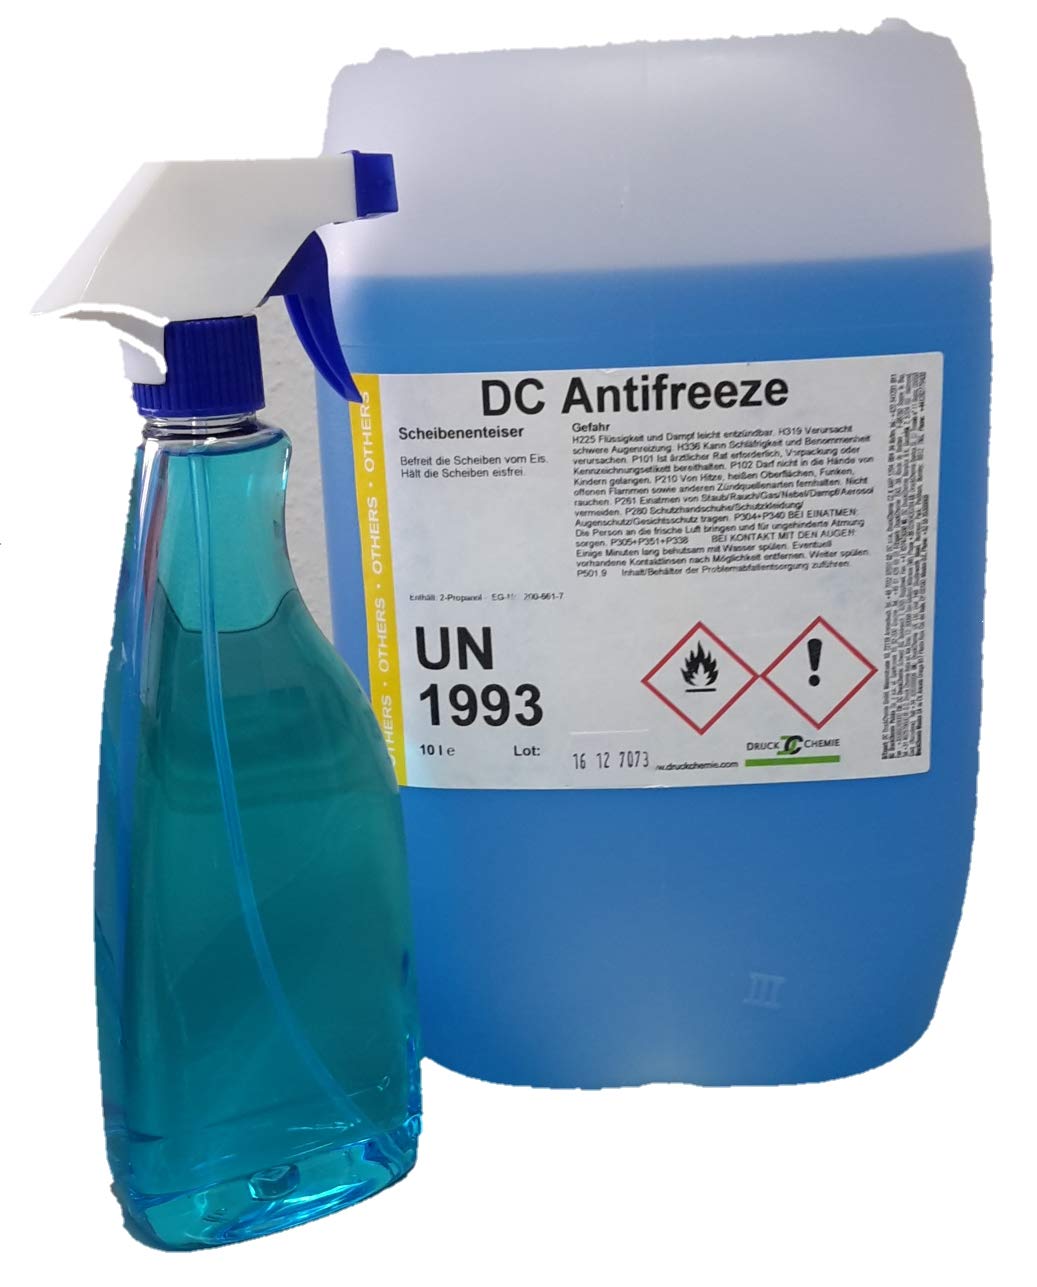 DC Antifreeze Scheibenenteiser 20 Liter Kanister + Triggersprayer - Entfroster - Defroster von DC Antifreeze